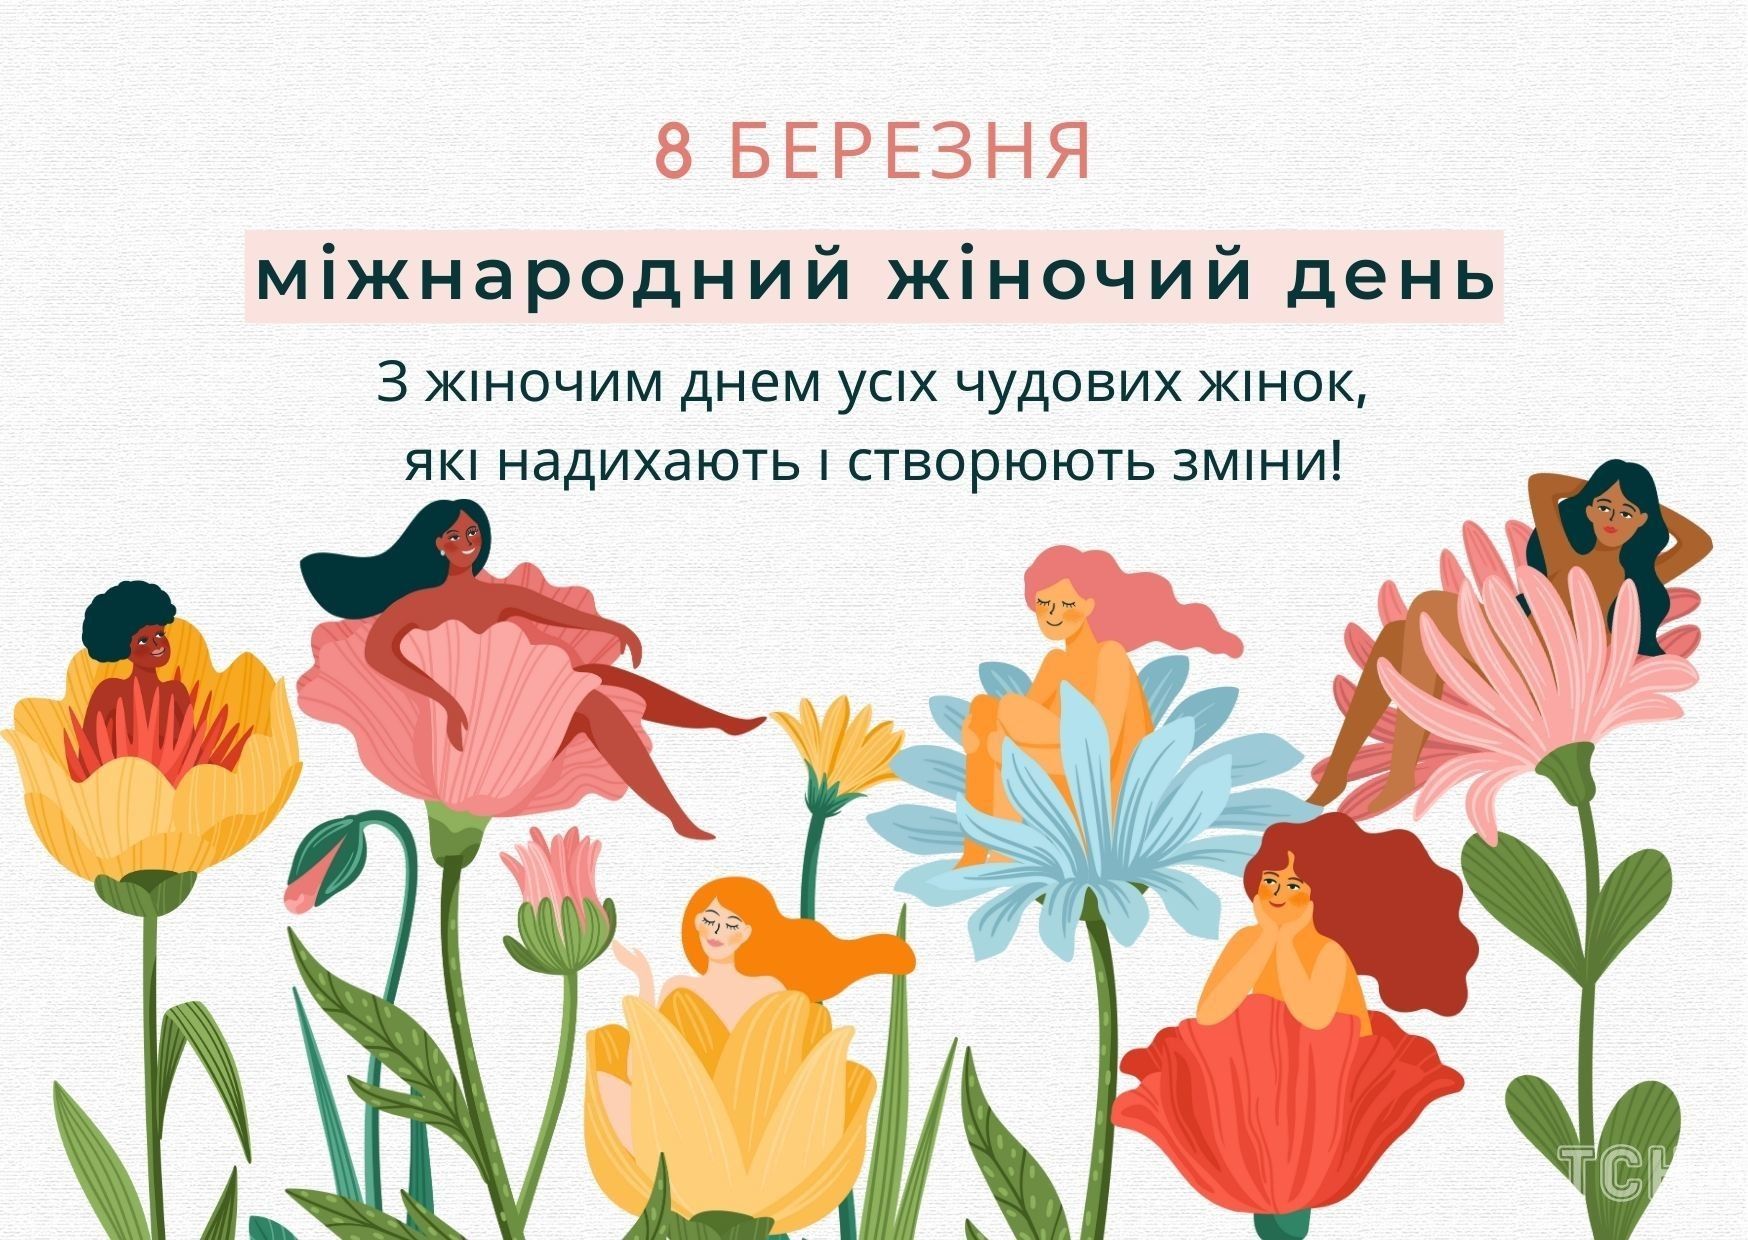 З 8 Березня 2023 року: картинки українською, привітання в прозі та віршах до Міжнародного жіночого дня 8